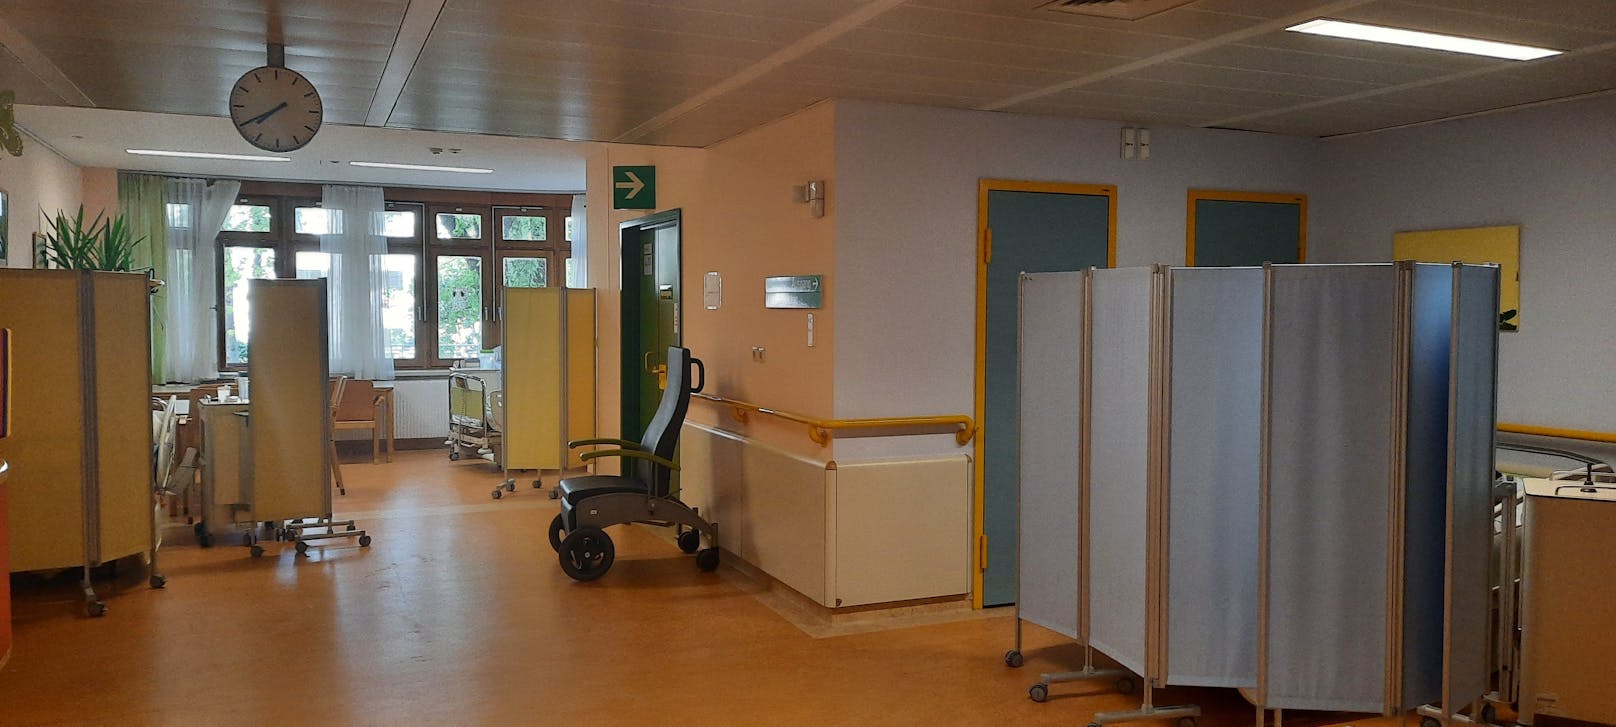 Patient lag nackt am Boden von Krankenhaus in Wien